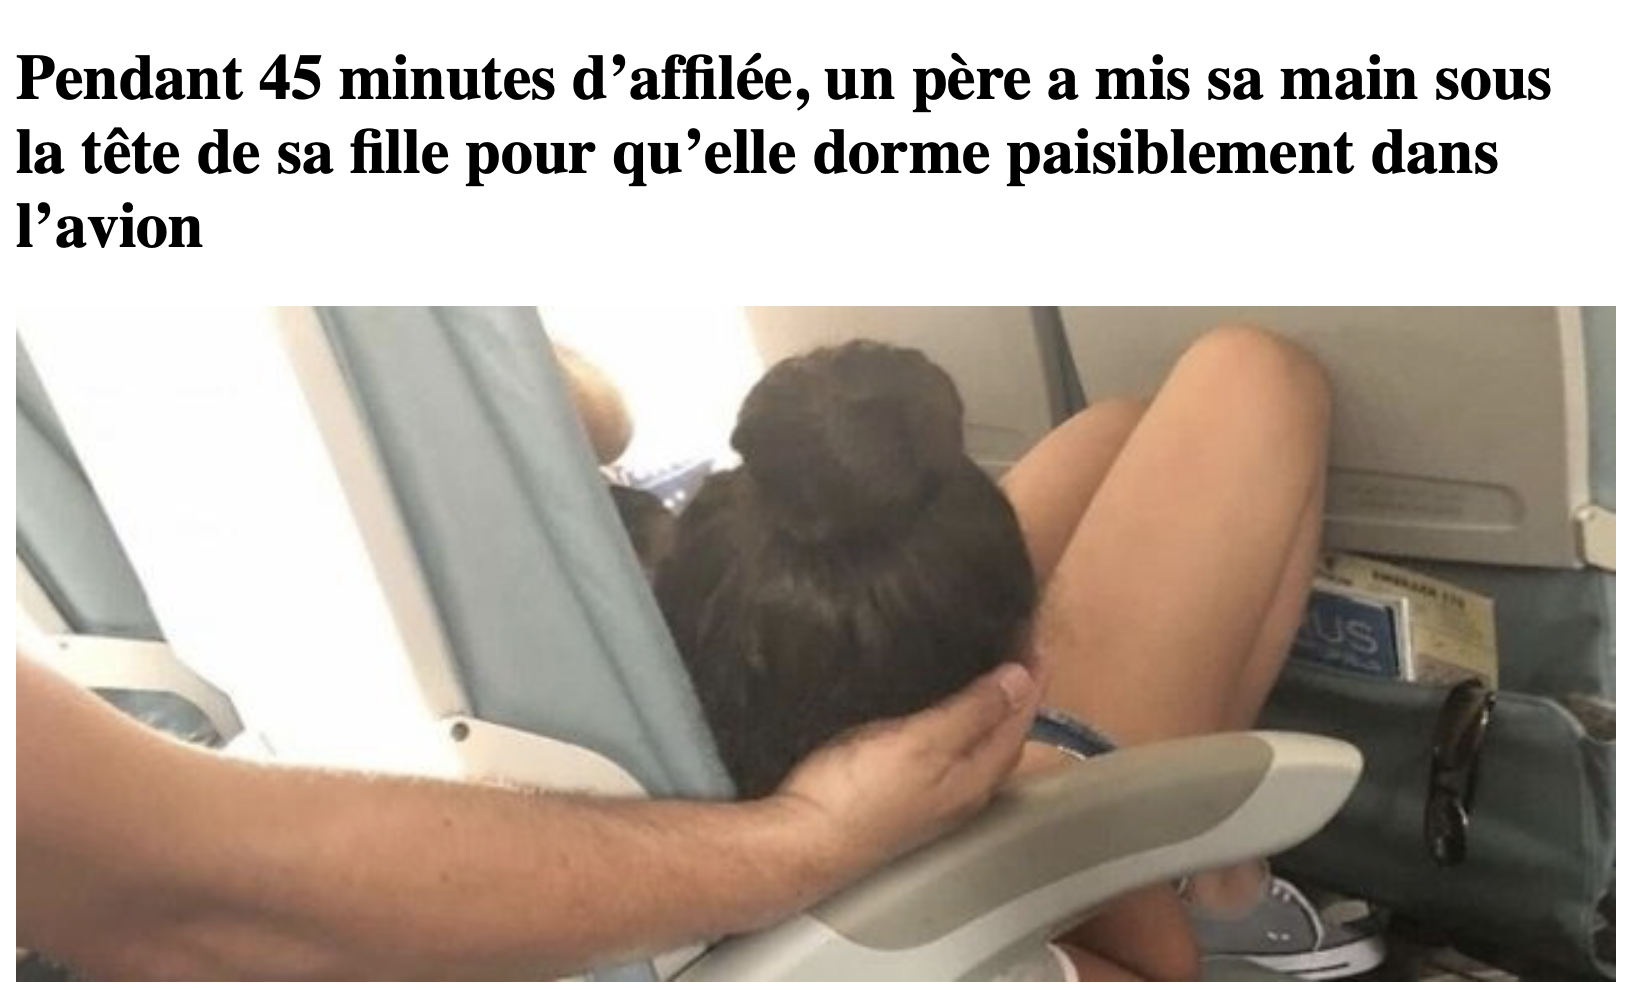 Pendant 45 minutes d’affilée, un père a mis sa main sous la tête de sa fille pour qu’elle dorme paisiblement dans l’avion